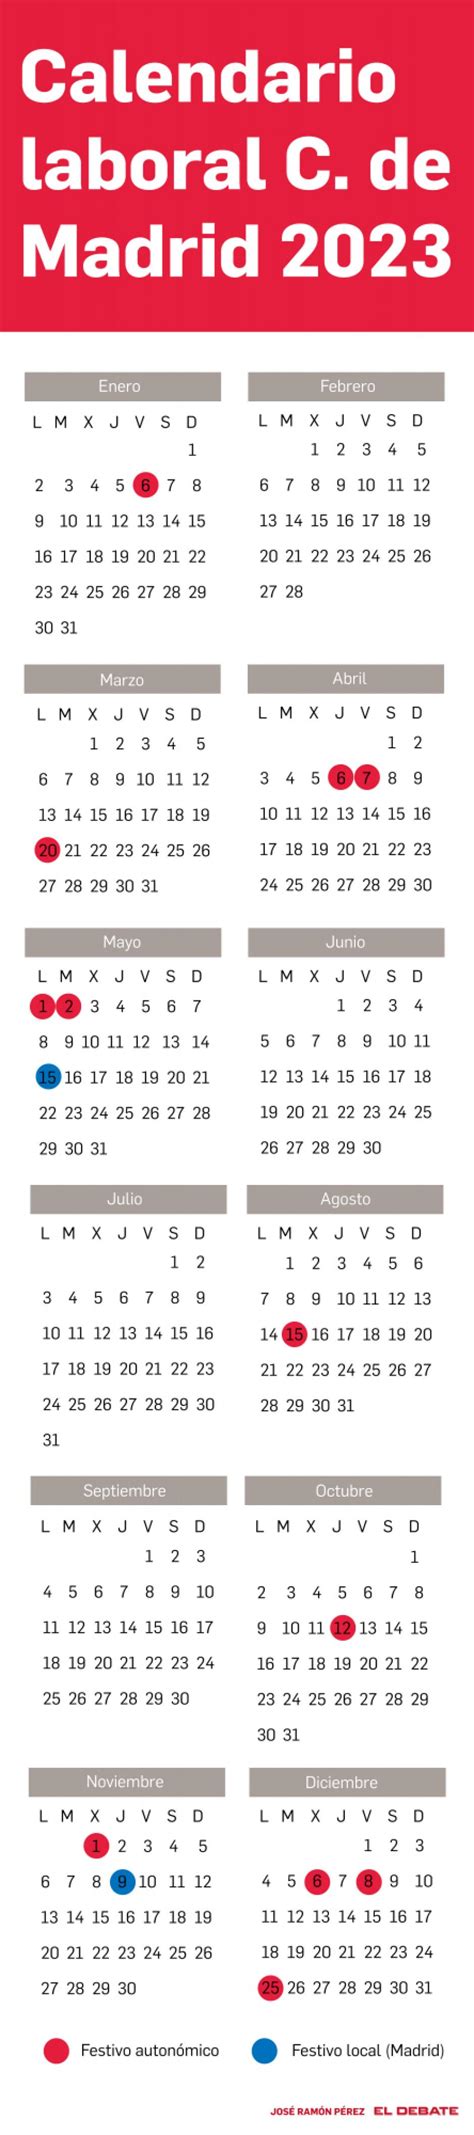 Calendario Festivos Nacionales Y Madrid 2023 Imagesee